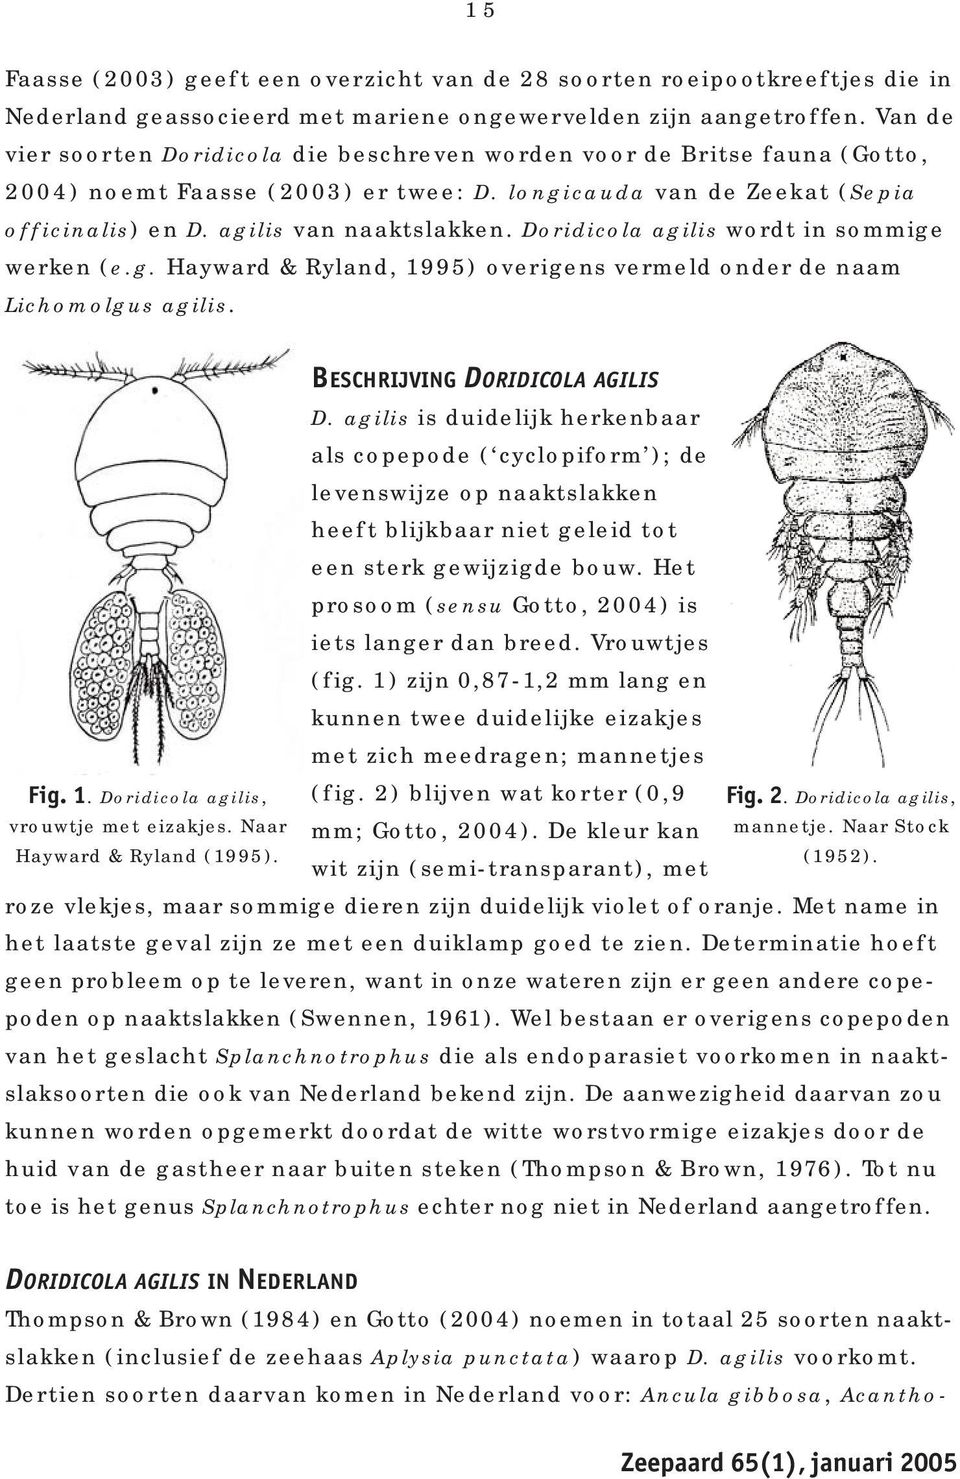 Doridicola agilis wordt in sommige werken (e.g. Hayward & Ryland, 1995) overigens vermeld onder de naam Lichomolgus agilis. Fig. 1. Doridicola agilis, vrouwtje met eizakjes.